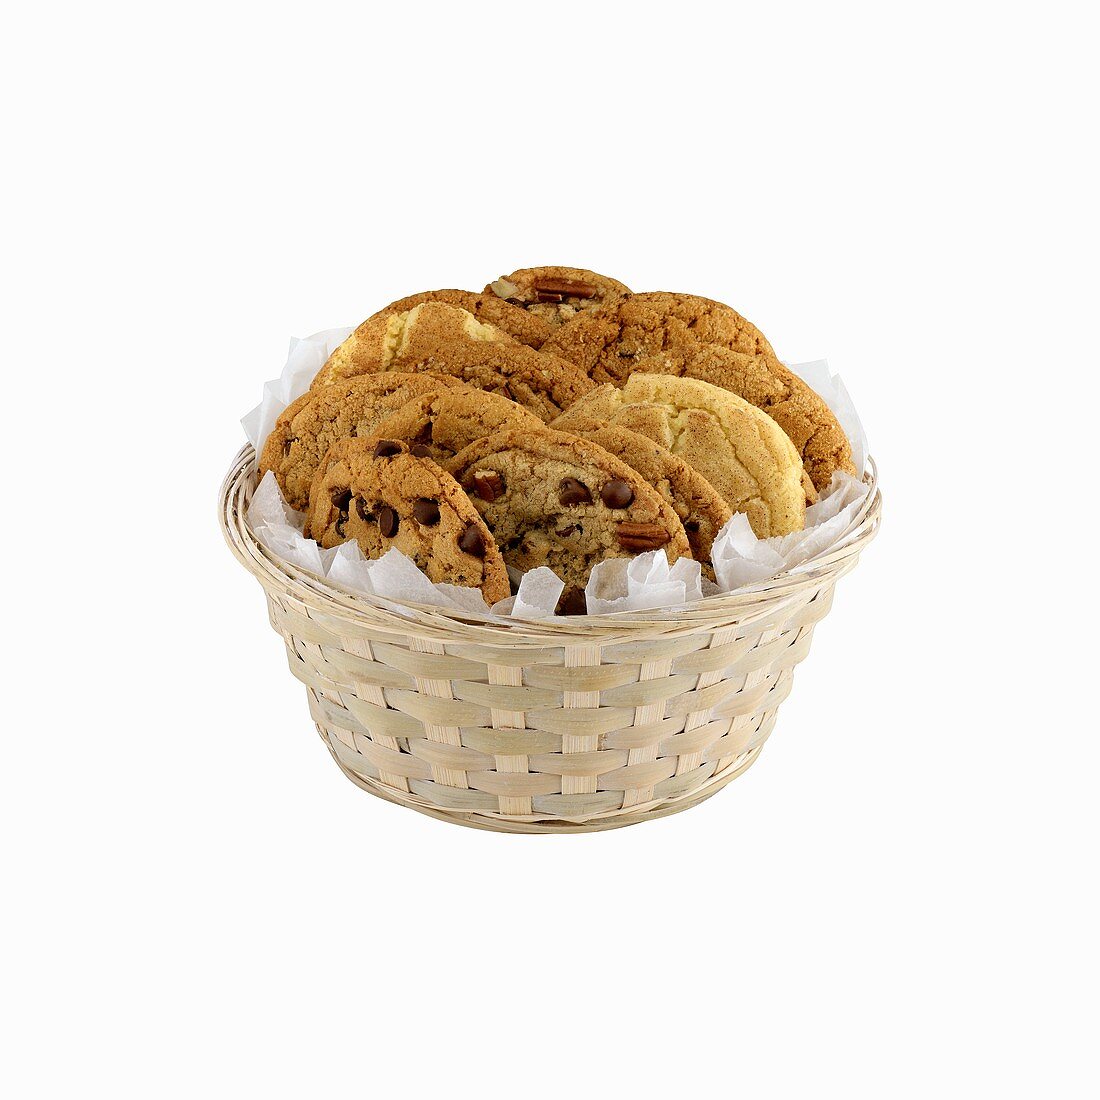 Körbchen mit verschiedenen Cookies